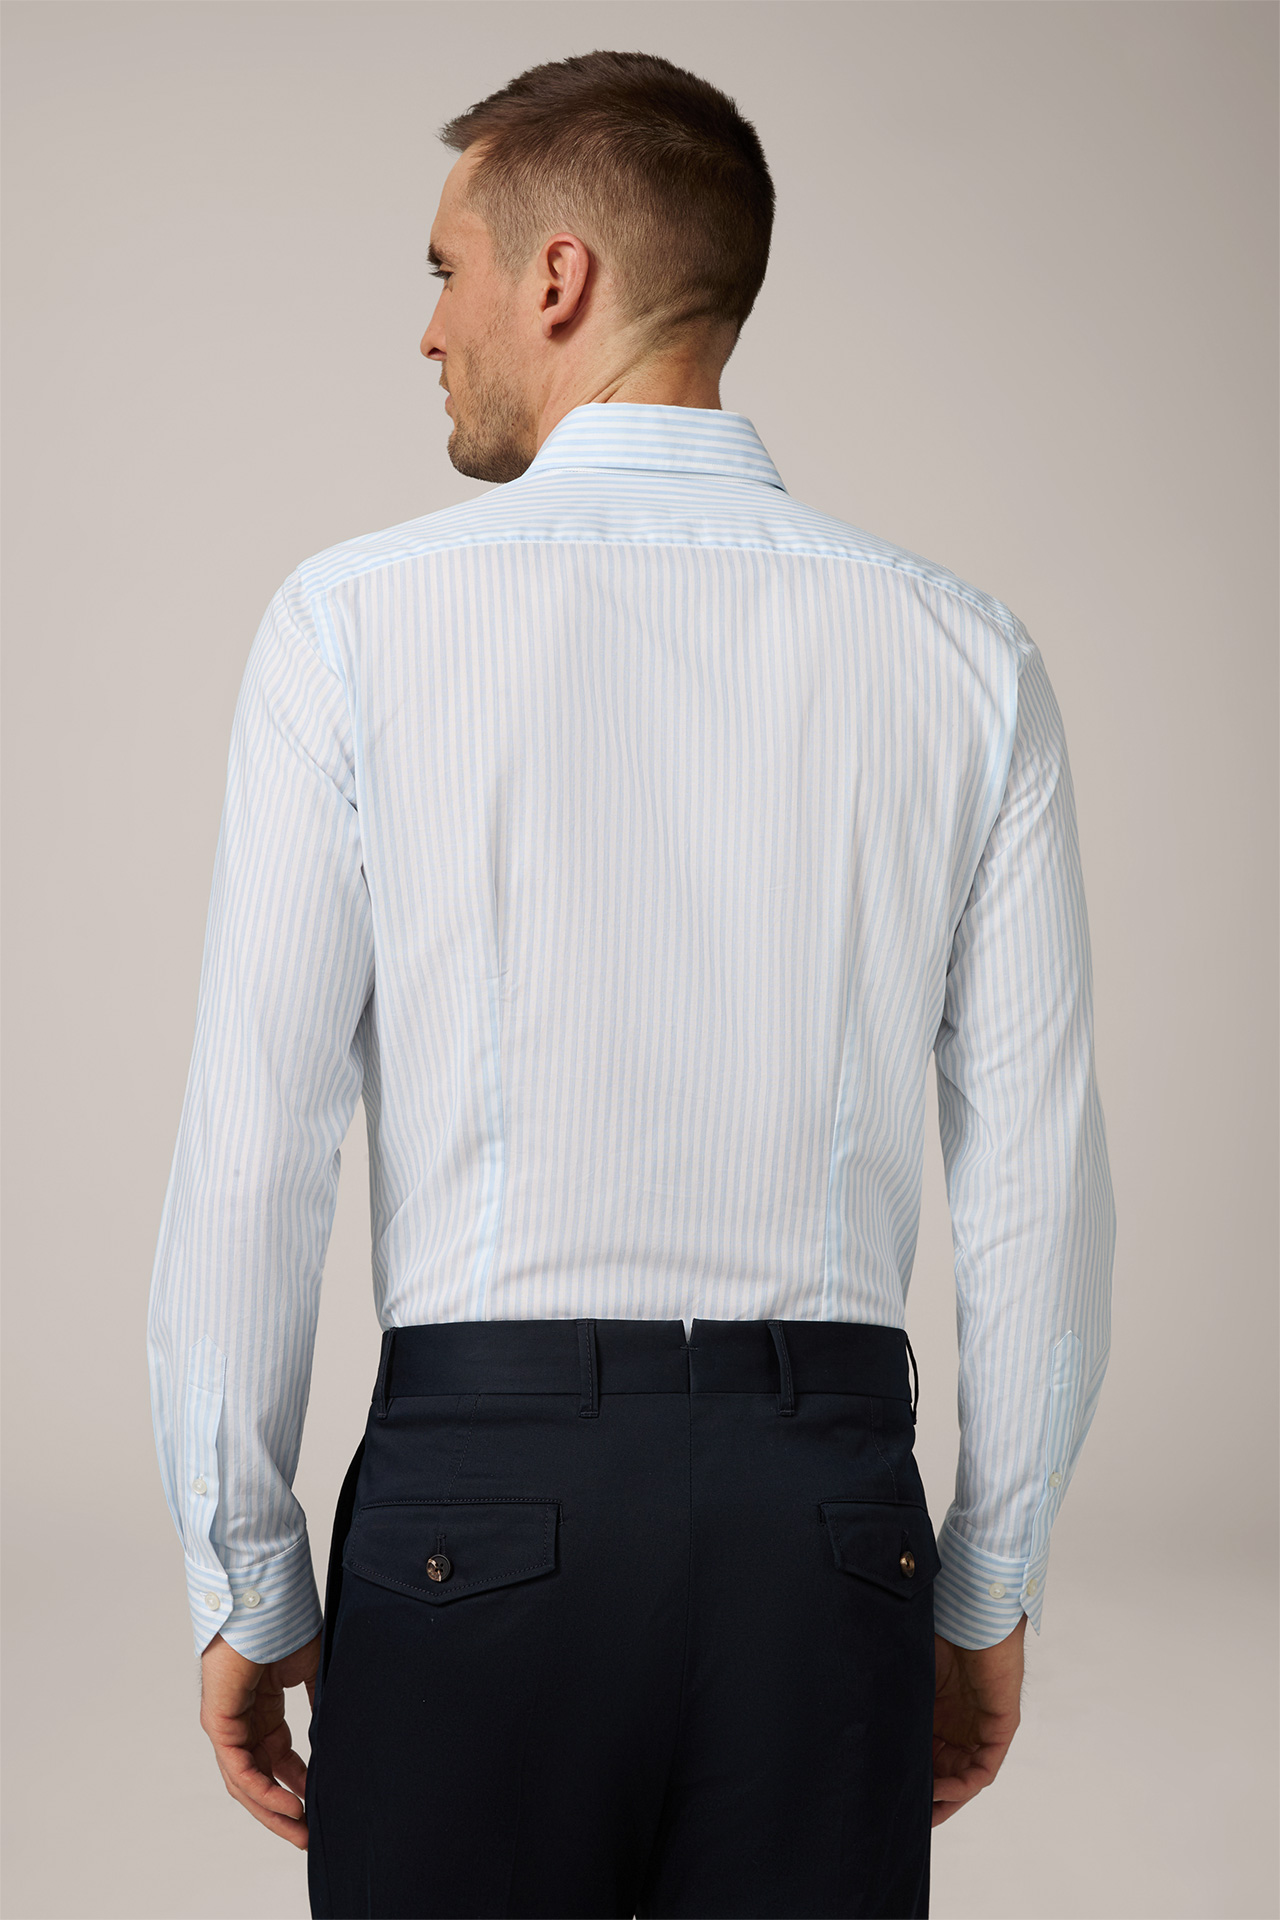 Baumwoll-Hemd Lano in Blau-Weiß gestreift